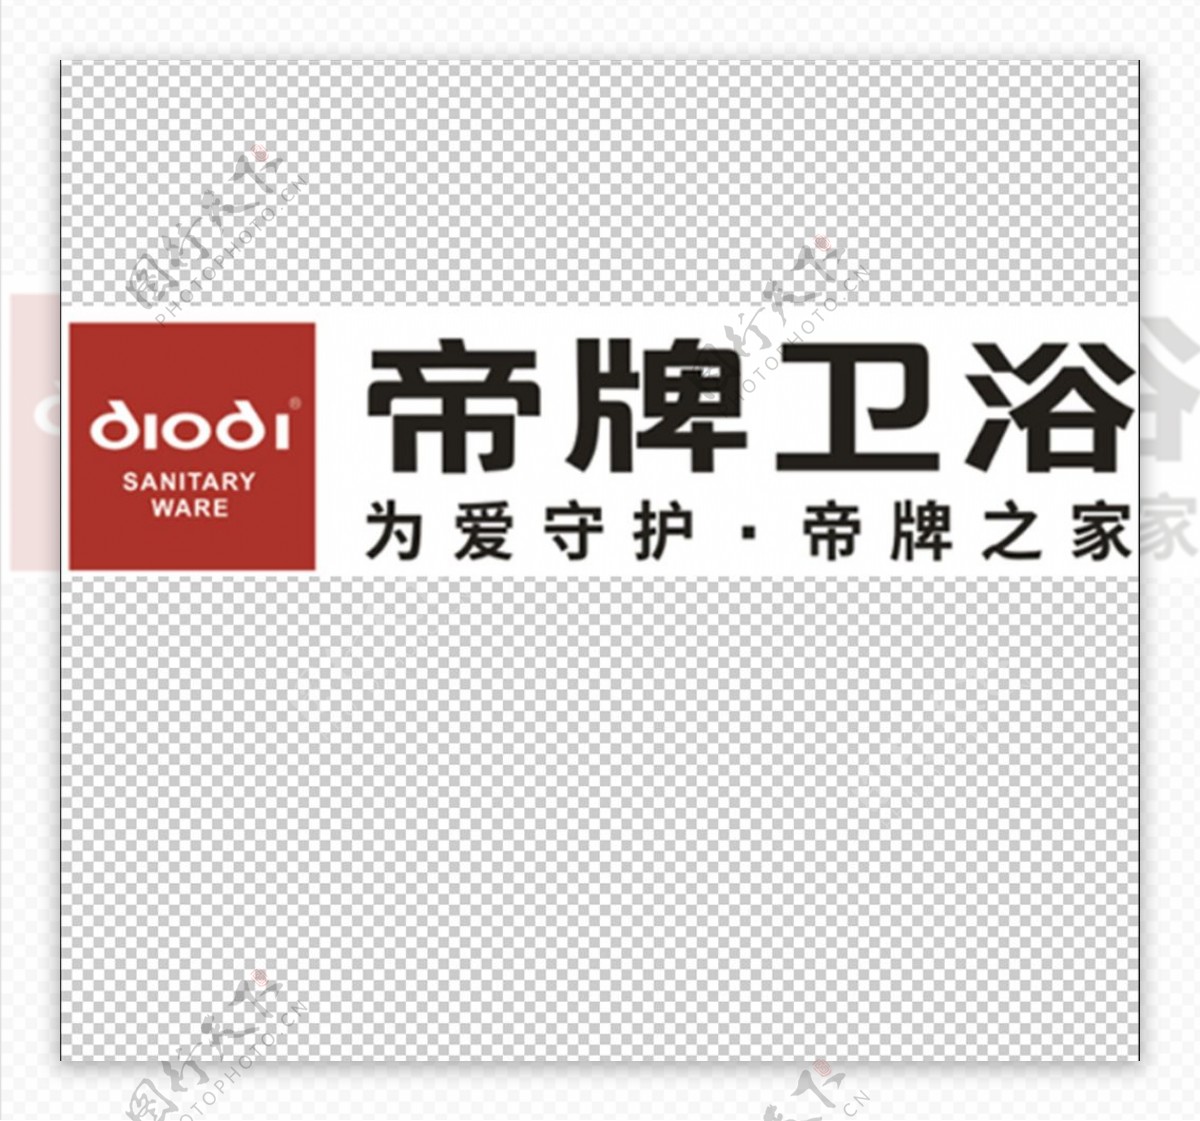 帝牌卫浴logo